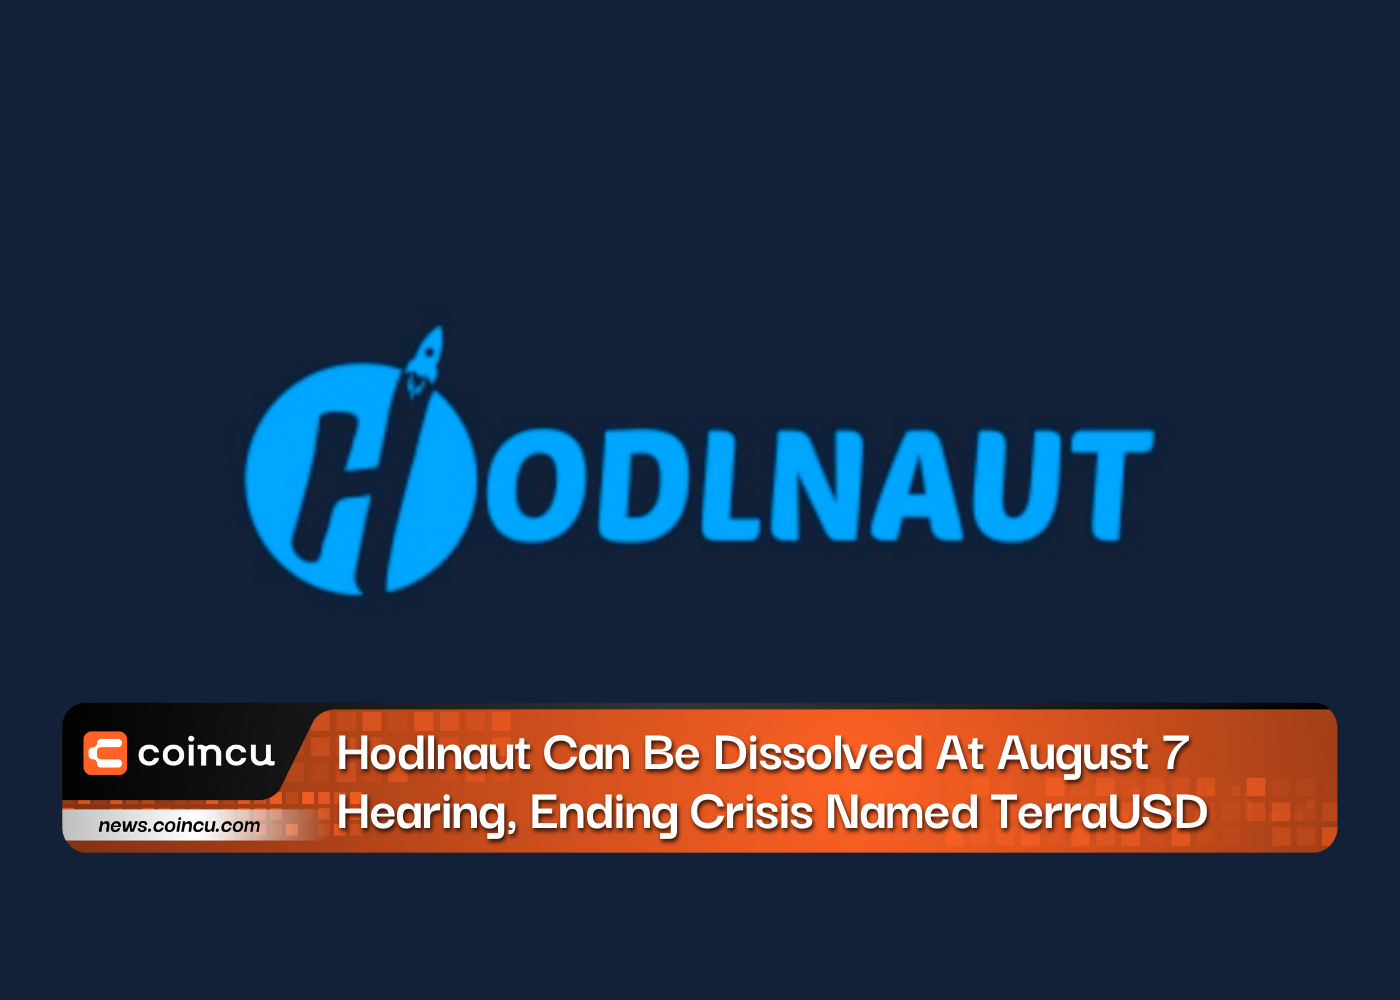 Hodlnaut kann bei der Anhörung am 7. August aufgelöst werden, wodurch die Krise unter dem Namen TerraUSD beendet wird